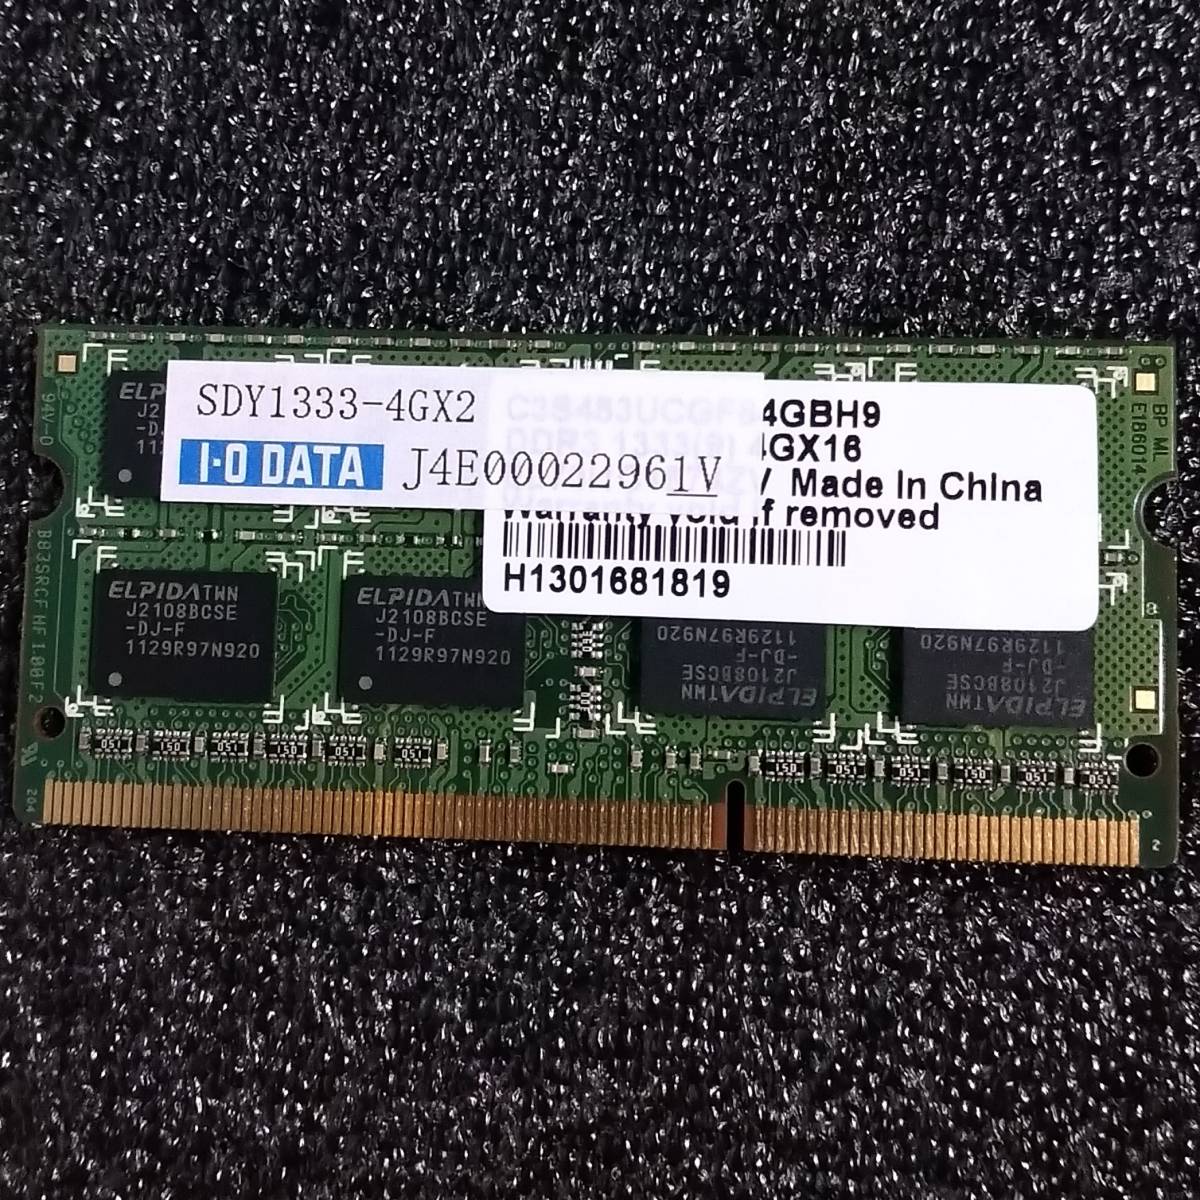 [ almost unused ]DDR3 SODIMM 4GB1 sheets I-O DATA I *o-* data SDY1333-4GX2 [DDR3-1333 PC3-10600 1.5V]